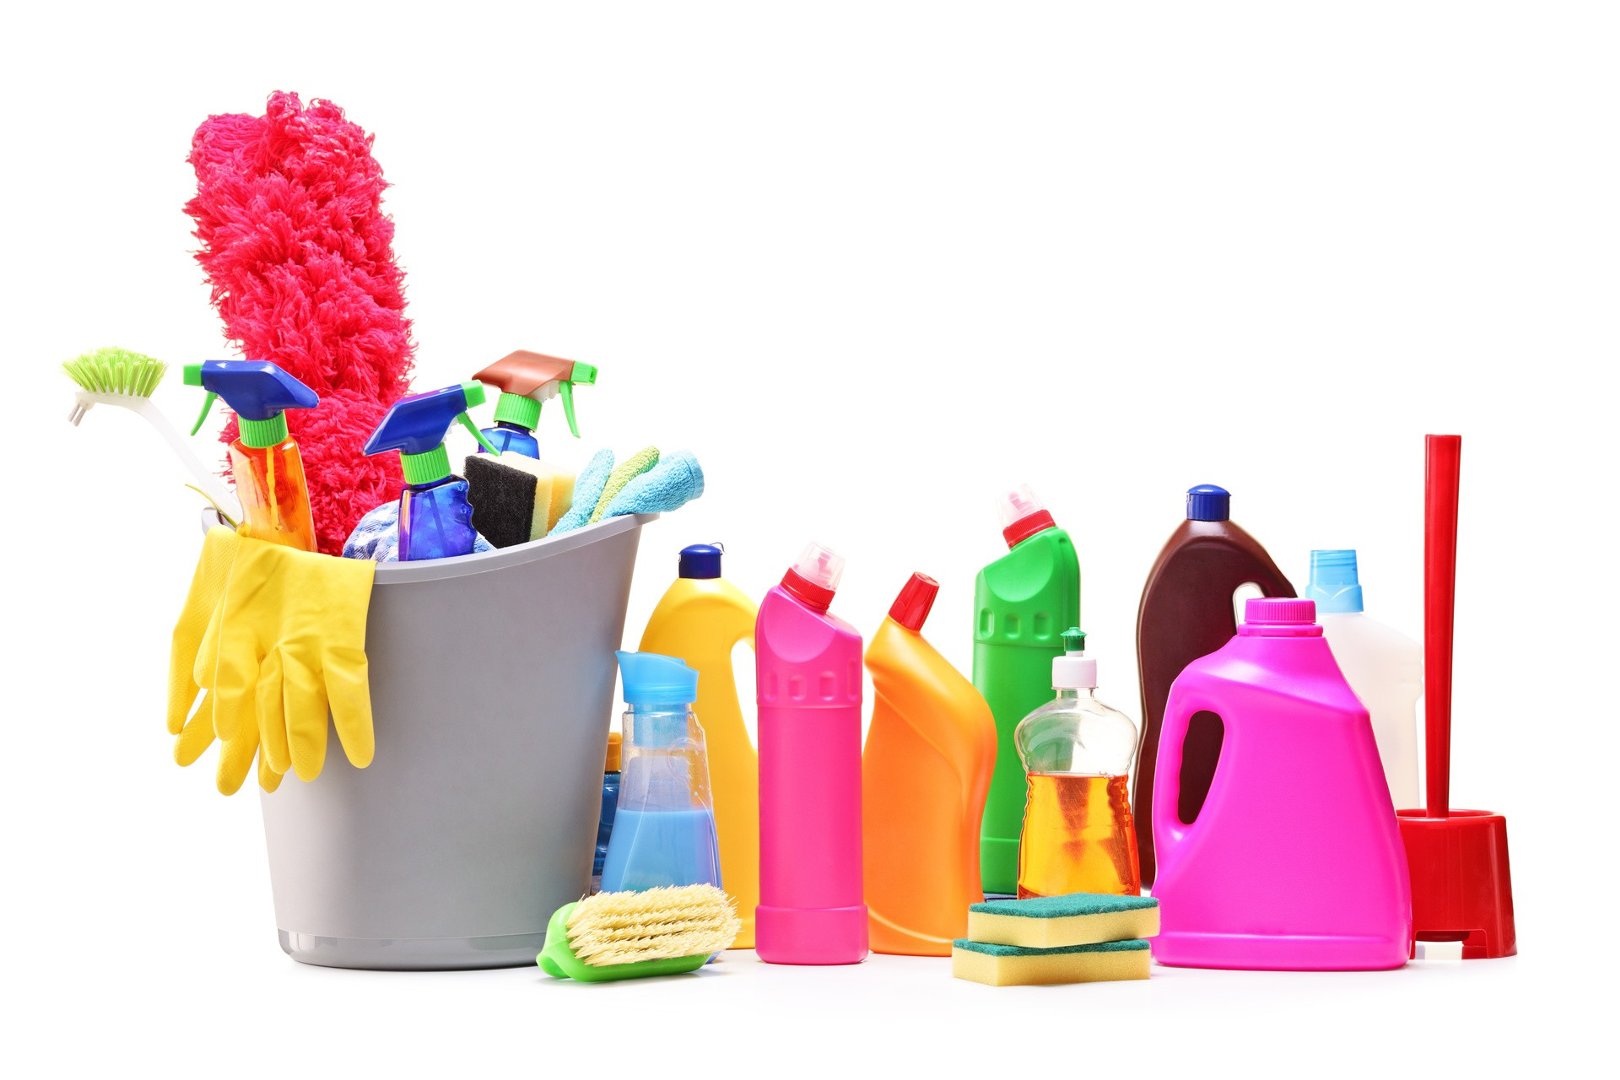 Domowe środki czystości: czy mogą nam szkodzić? | RegioDom